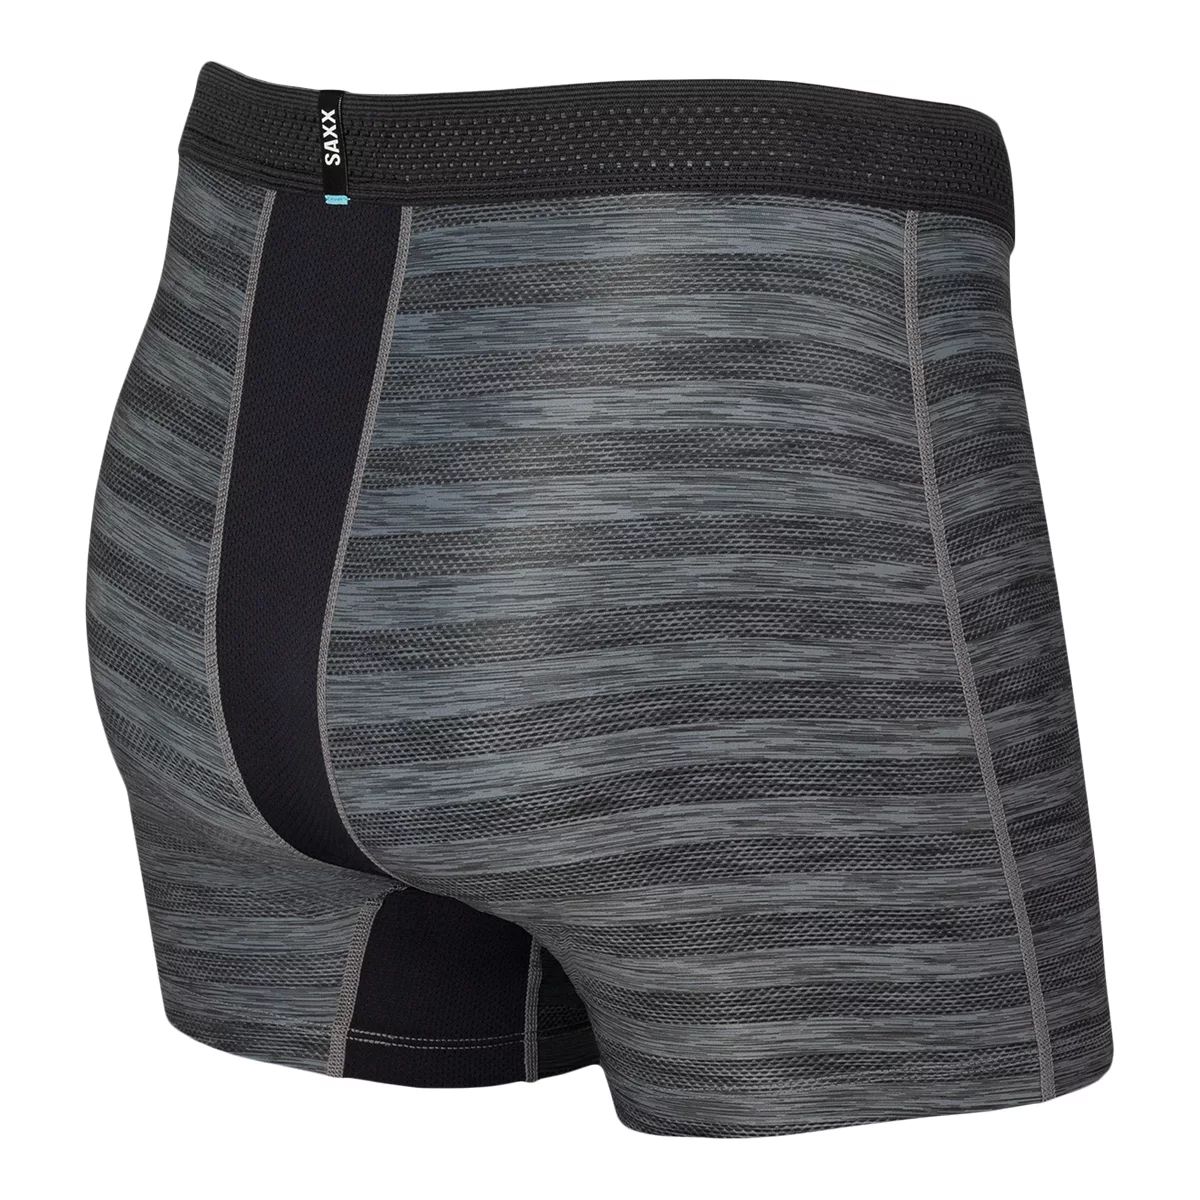 SAXX Droptemp Hotshot Stripe Men's Boxer Brief, Workout Underwear,  Quick-Dry